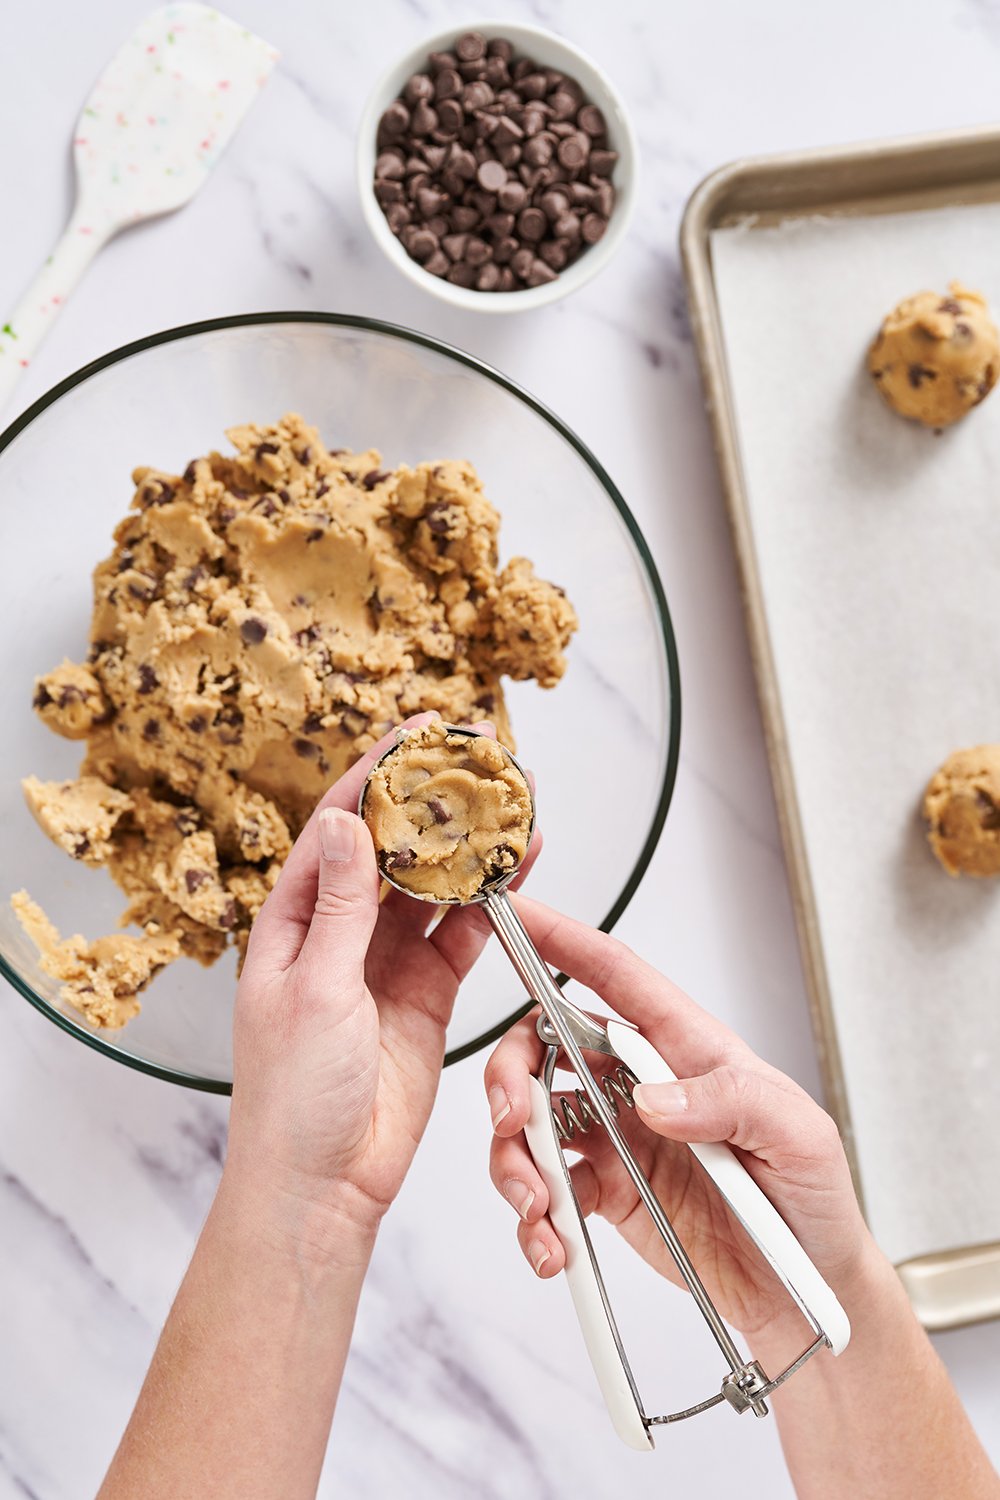 https://handletheheat.com/wp-content/uploads/2022/11/best-cookie-scoops-for-baking-cookies.jpg